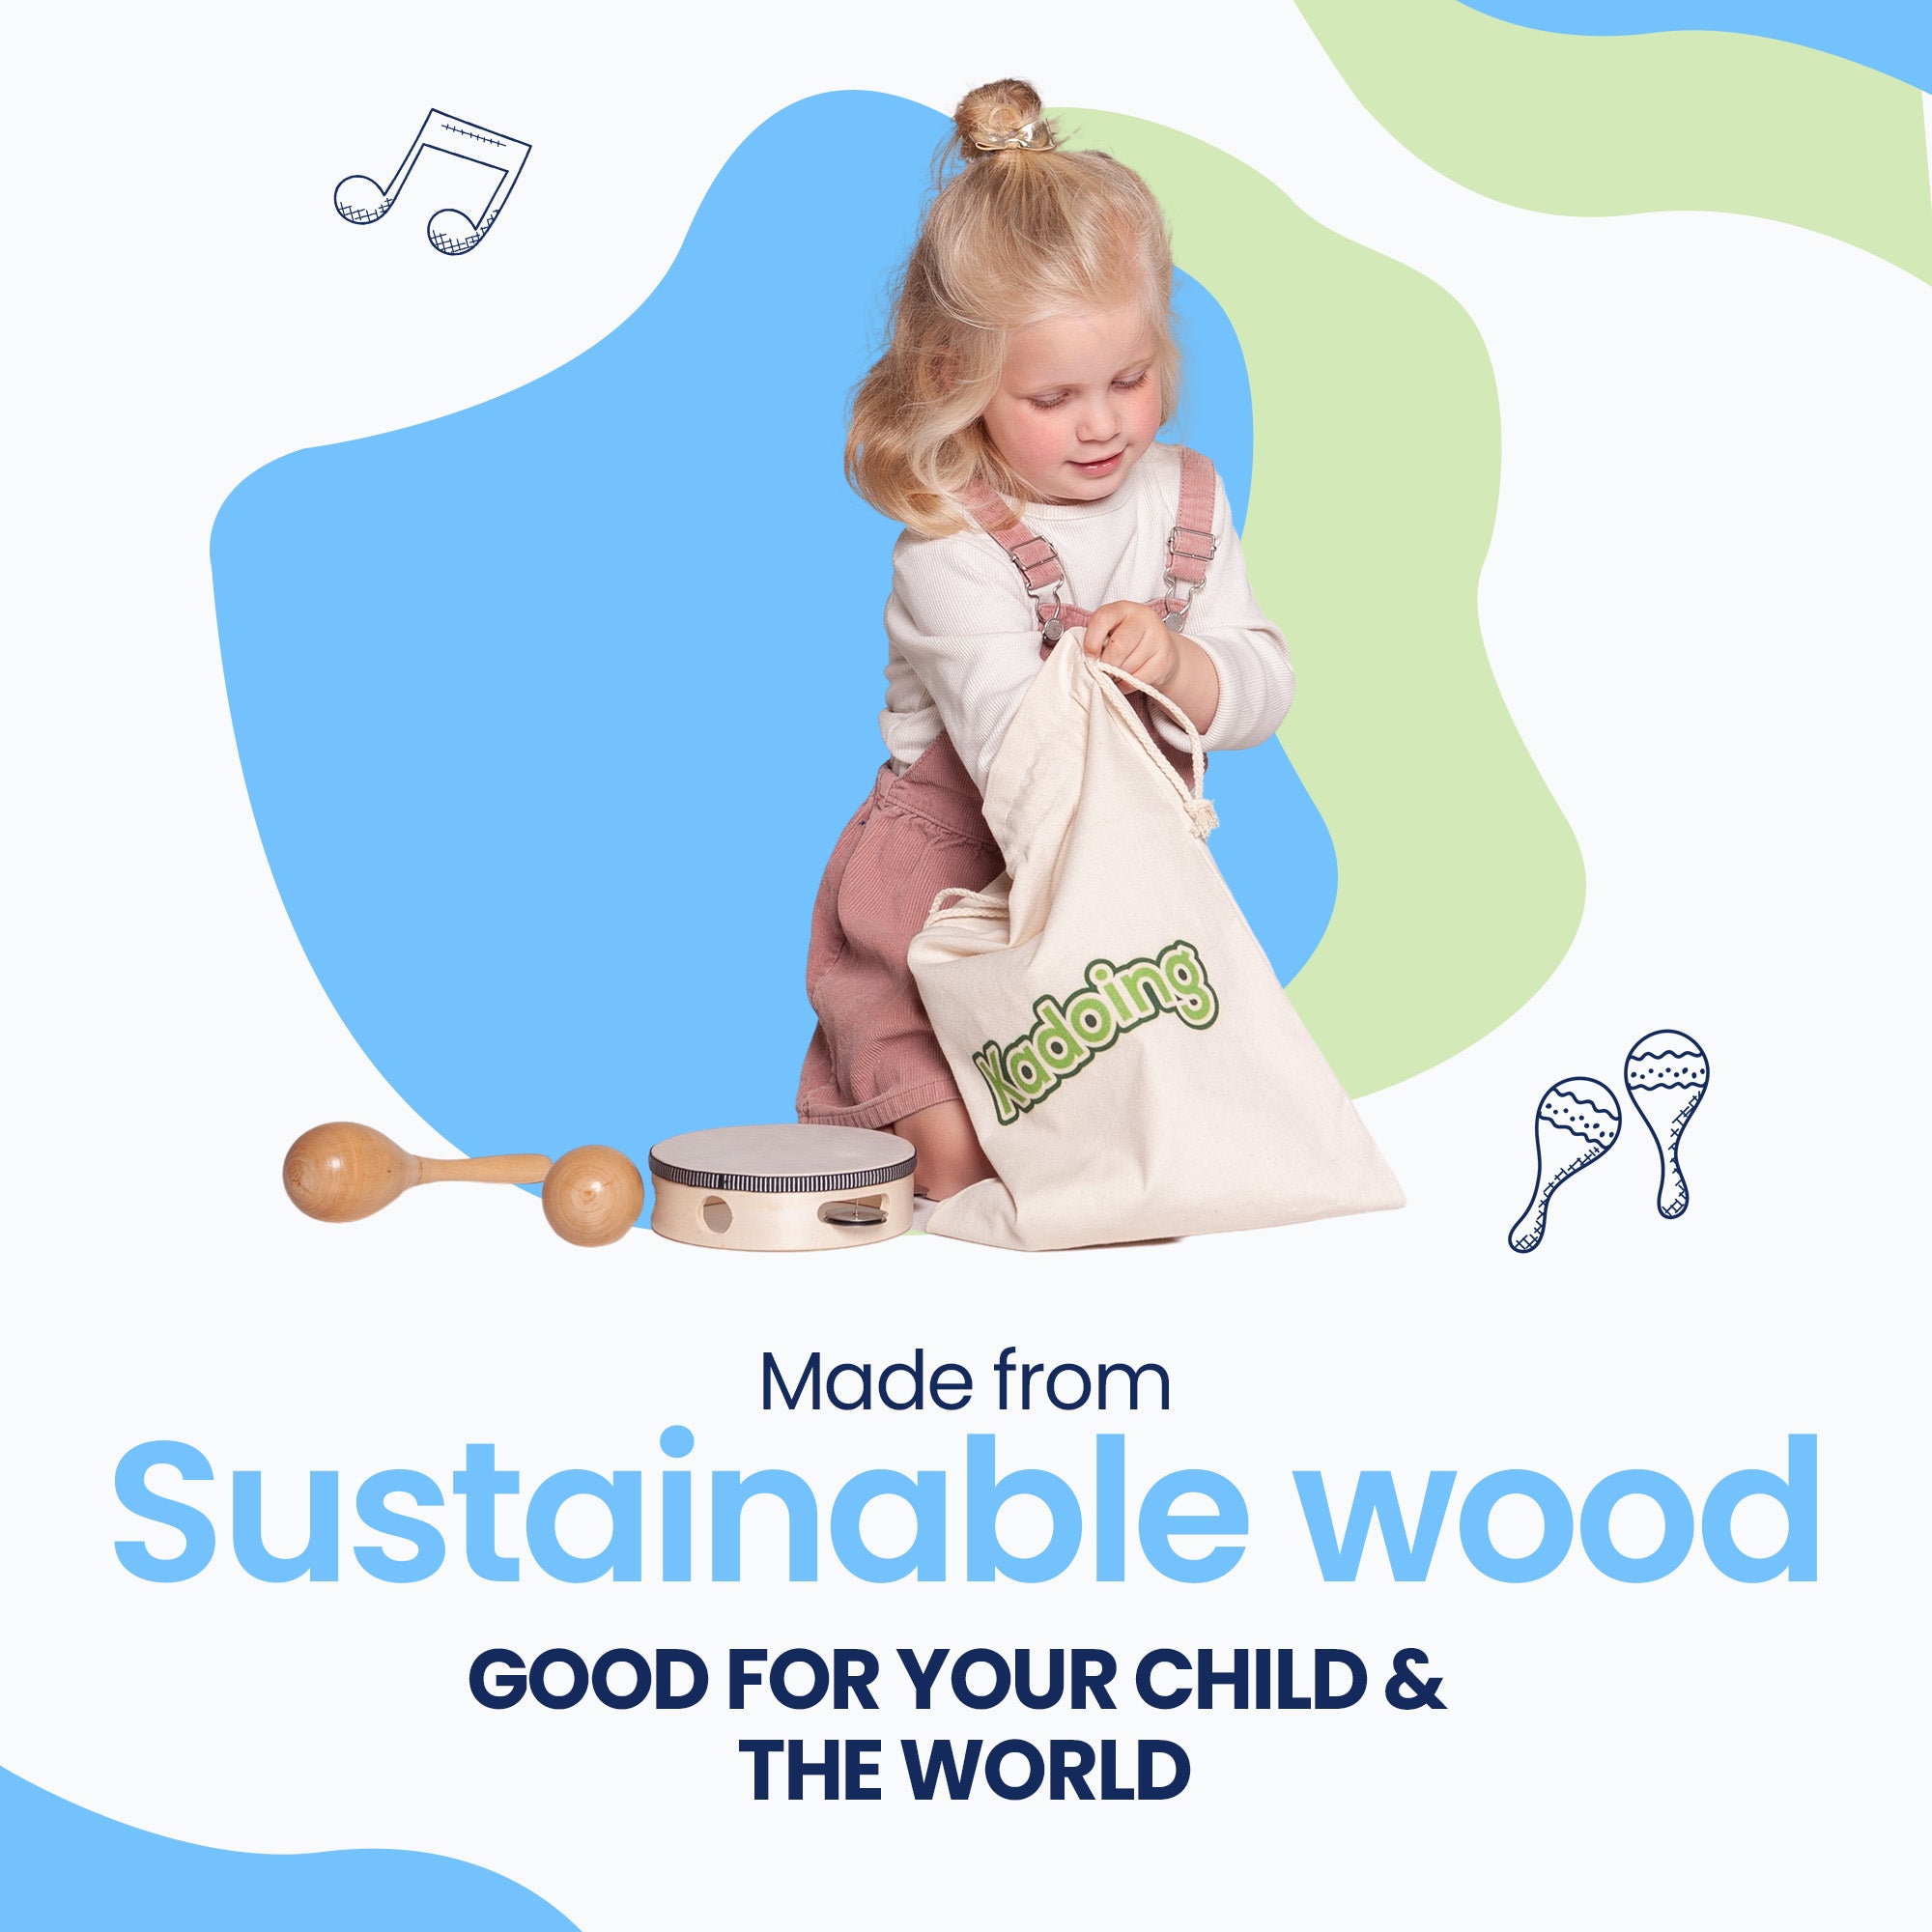 El conjunto de instrumentos musicales está fabricado de madera sostenible, como es de esperar de Kadoing.